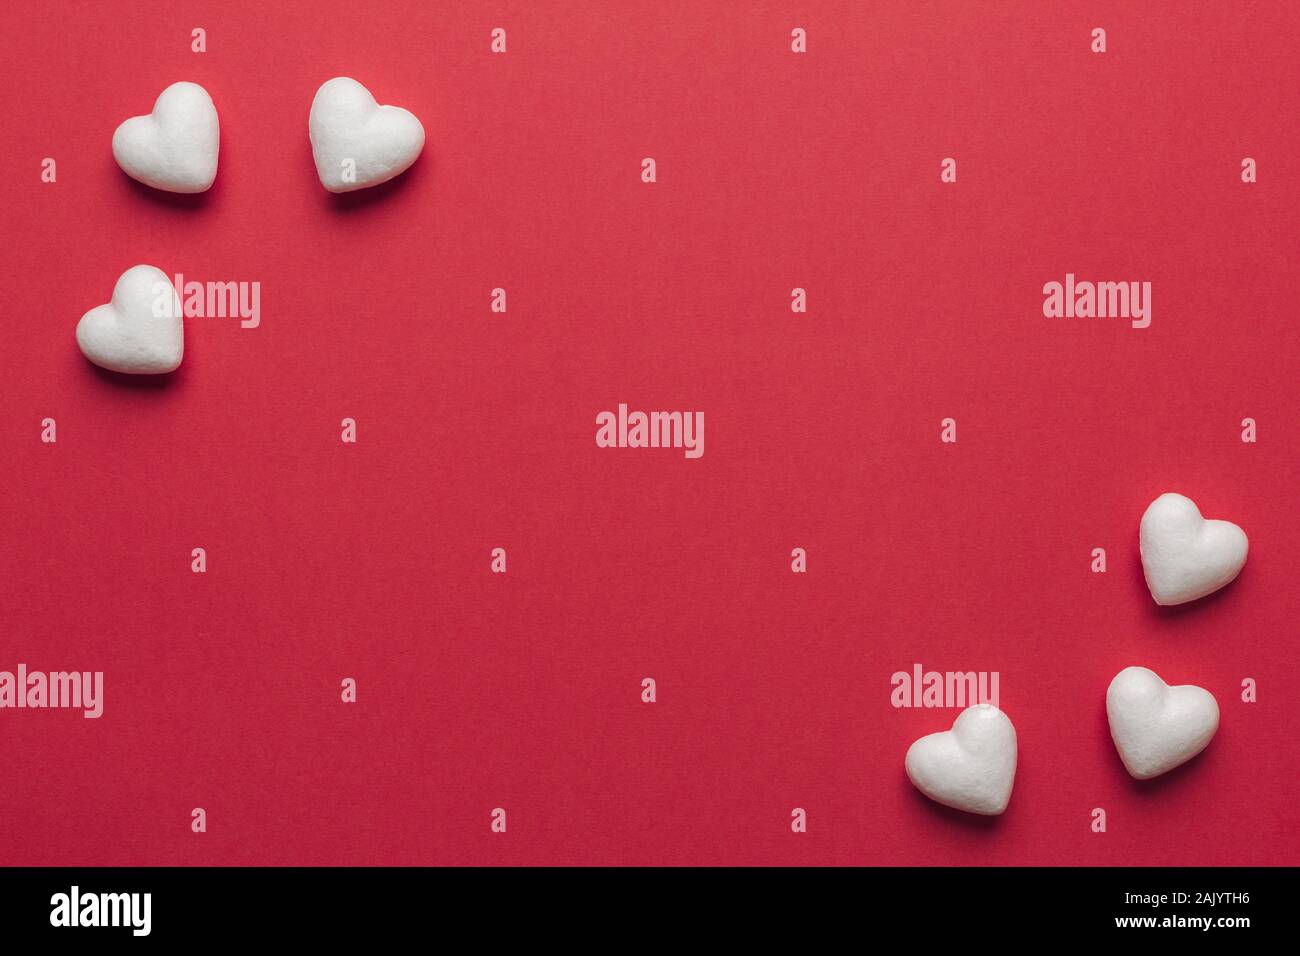 Stock photo de petits coeurs blancs sur fond rouge. Coeurs dans les coins avec un espace pour le texte Banque D'Images